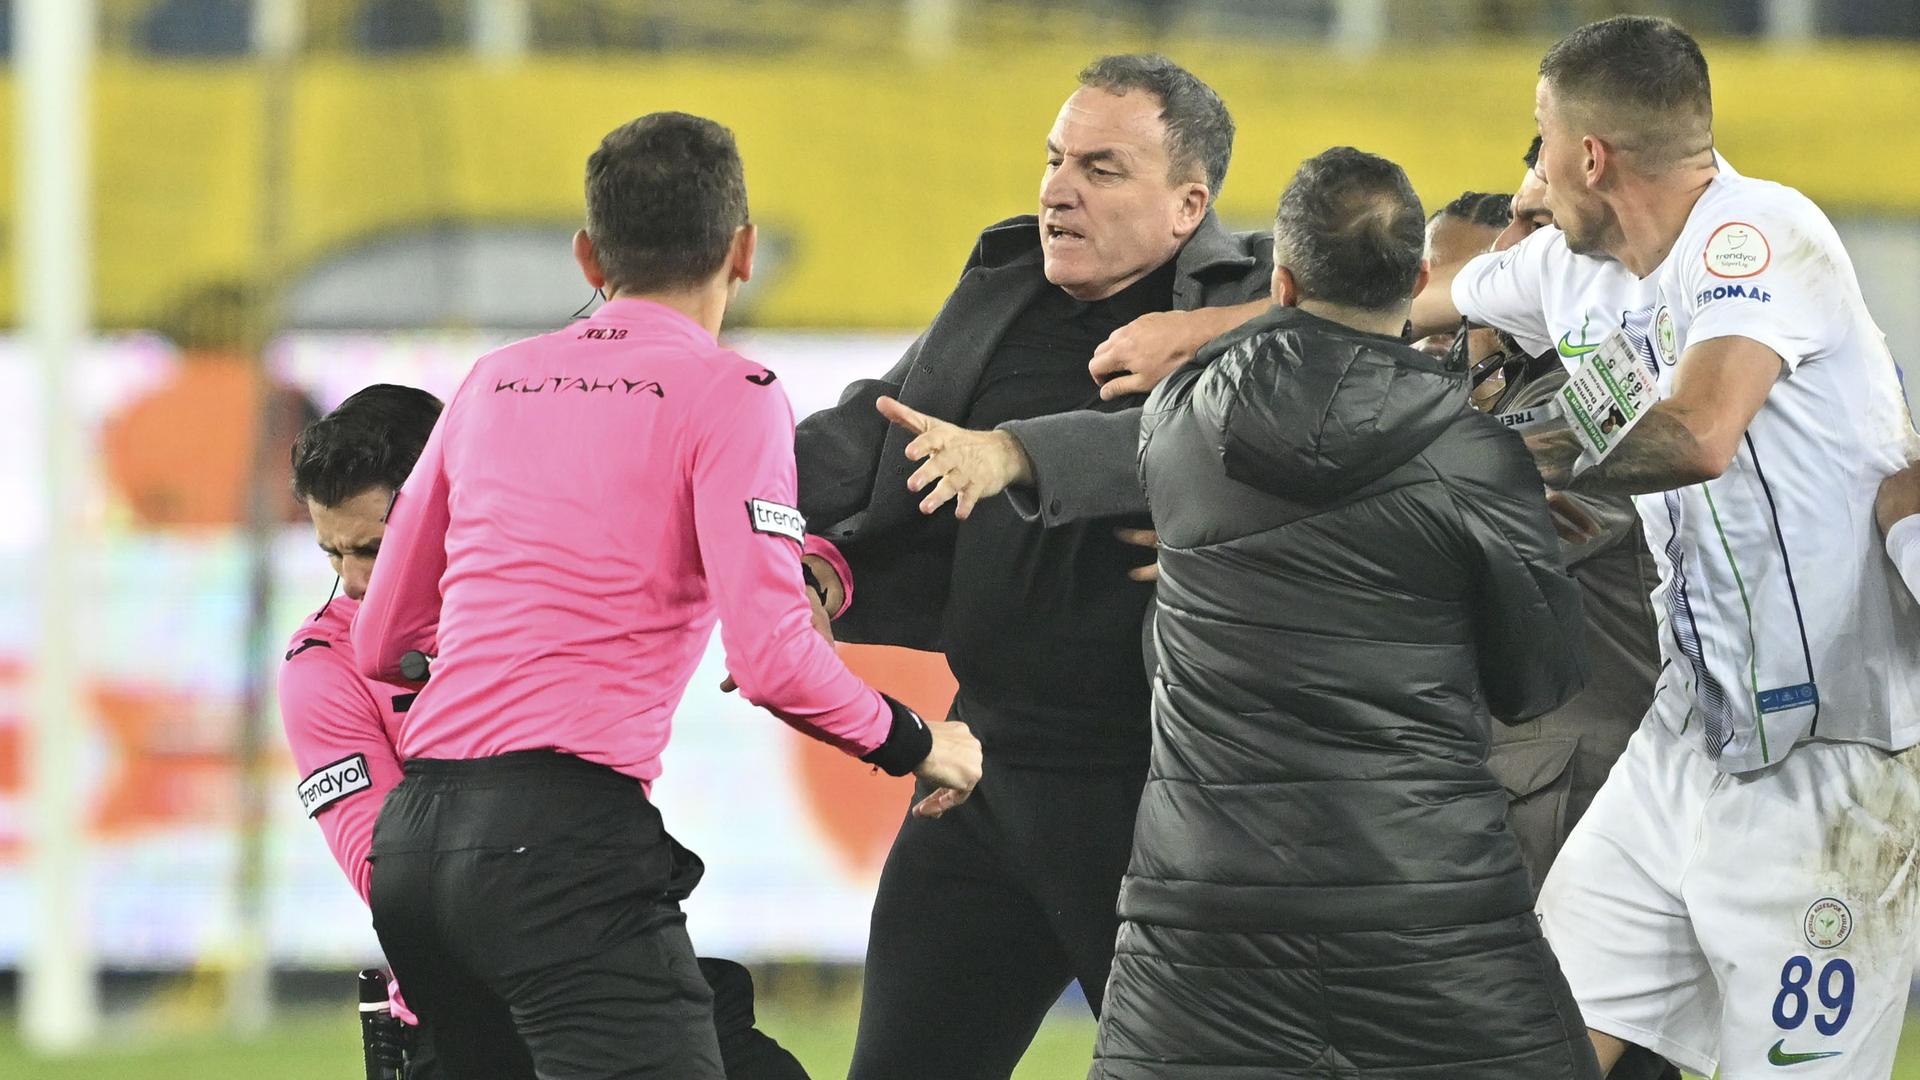 Faruk Koca schlägt den Schiedsrichter Halil Umut Meler mit der Faust ins Gesicht, dieser fällt zu Boden. Mehrere andere Leute versuchen, Koca zurückzuhalten.